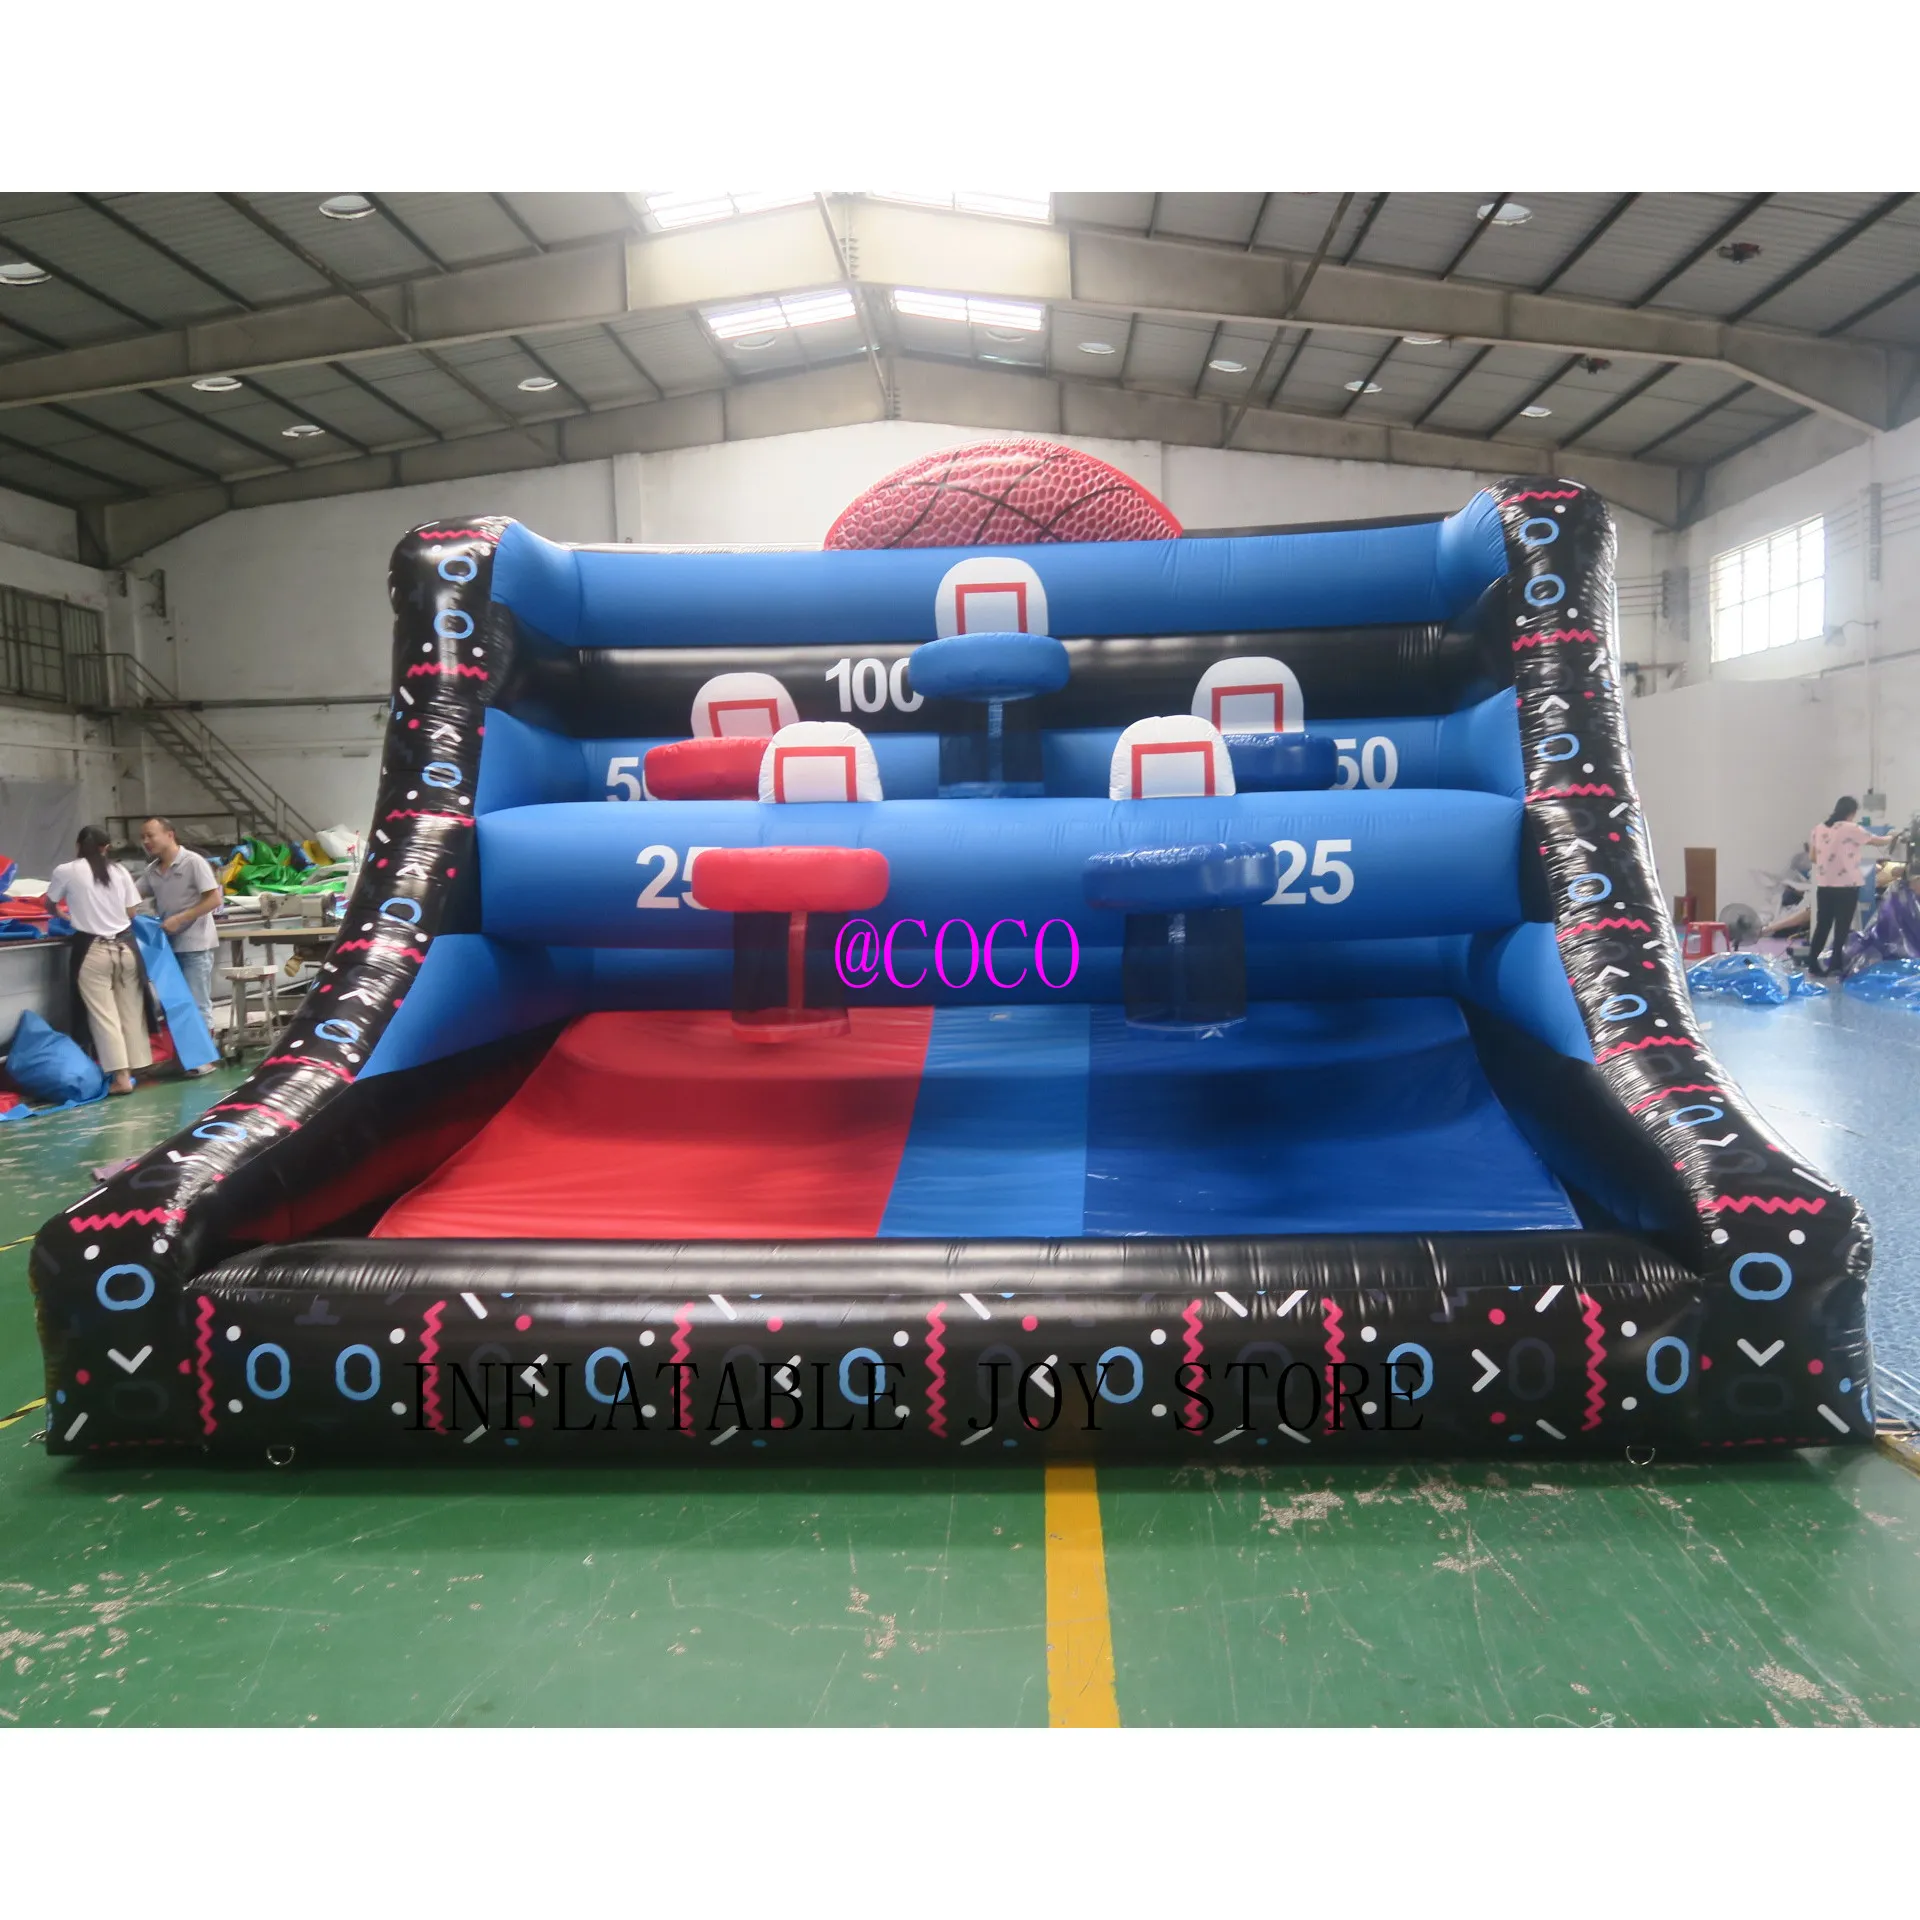 Activités de plein air 4MWX3MLX3,5MH (13.2x10x11.5ft) avec 6 balles Games de basket-ball gonflables Tolning Sport Game pour les enfants et les adultes